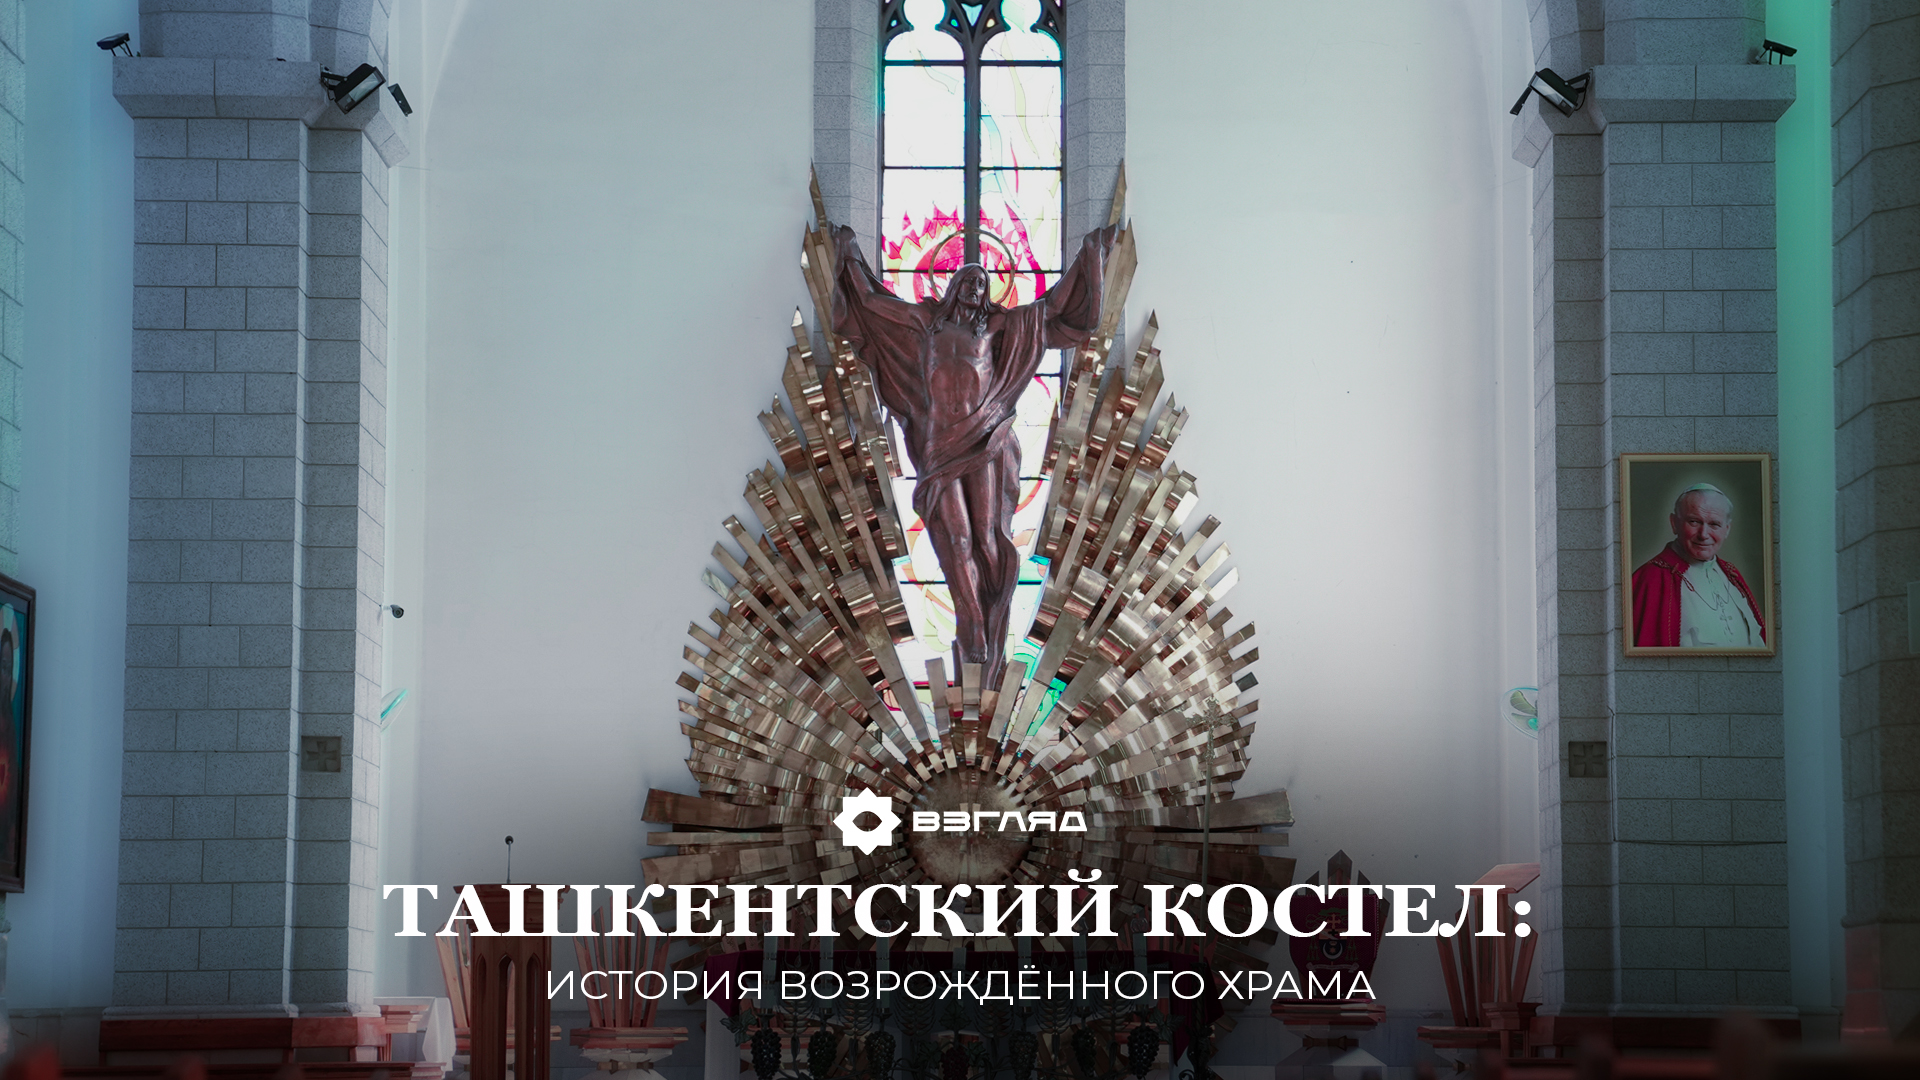 Неоготический стиль и скорбящая узбечка на барельефе: история польского костёла в Ташкенте — фото